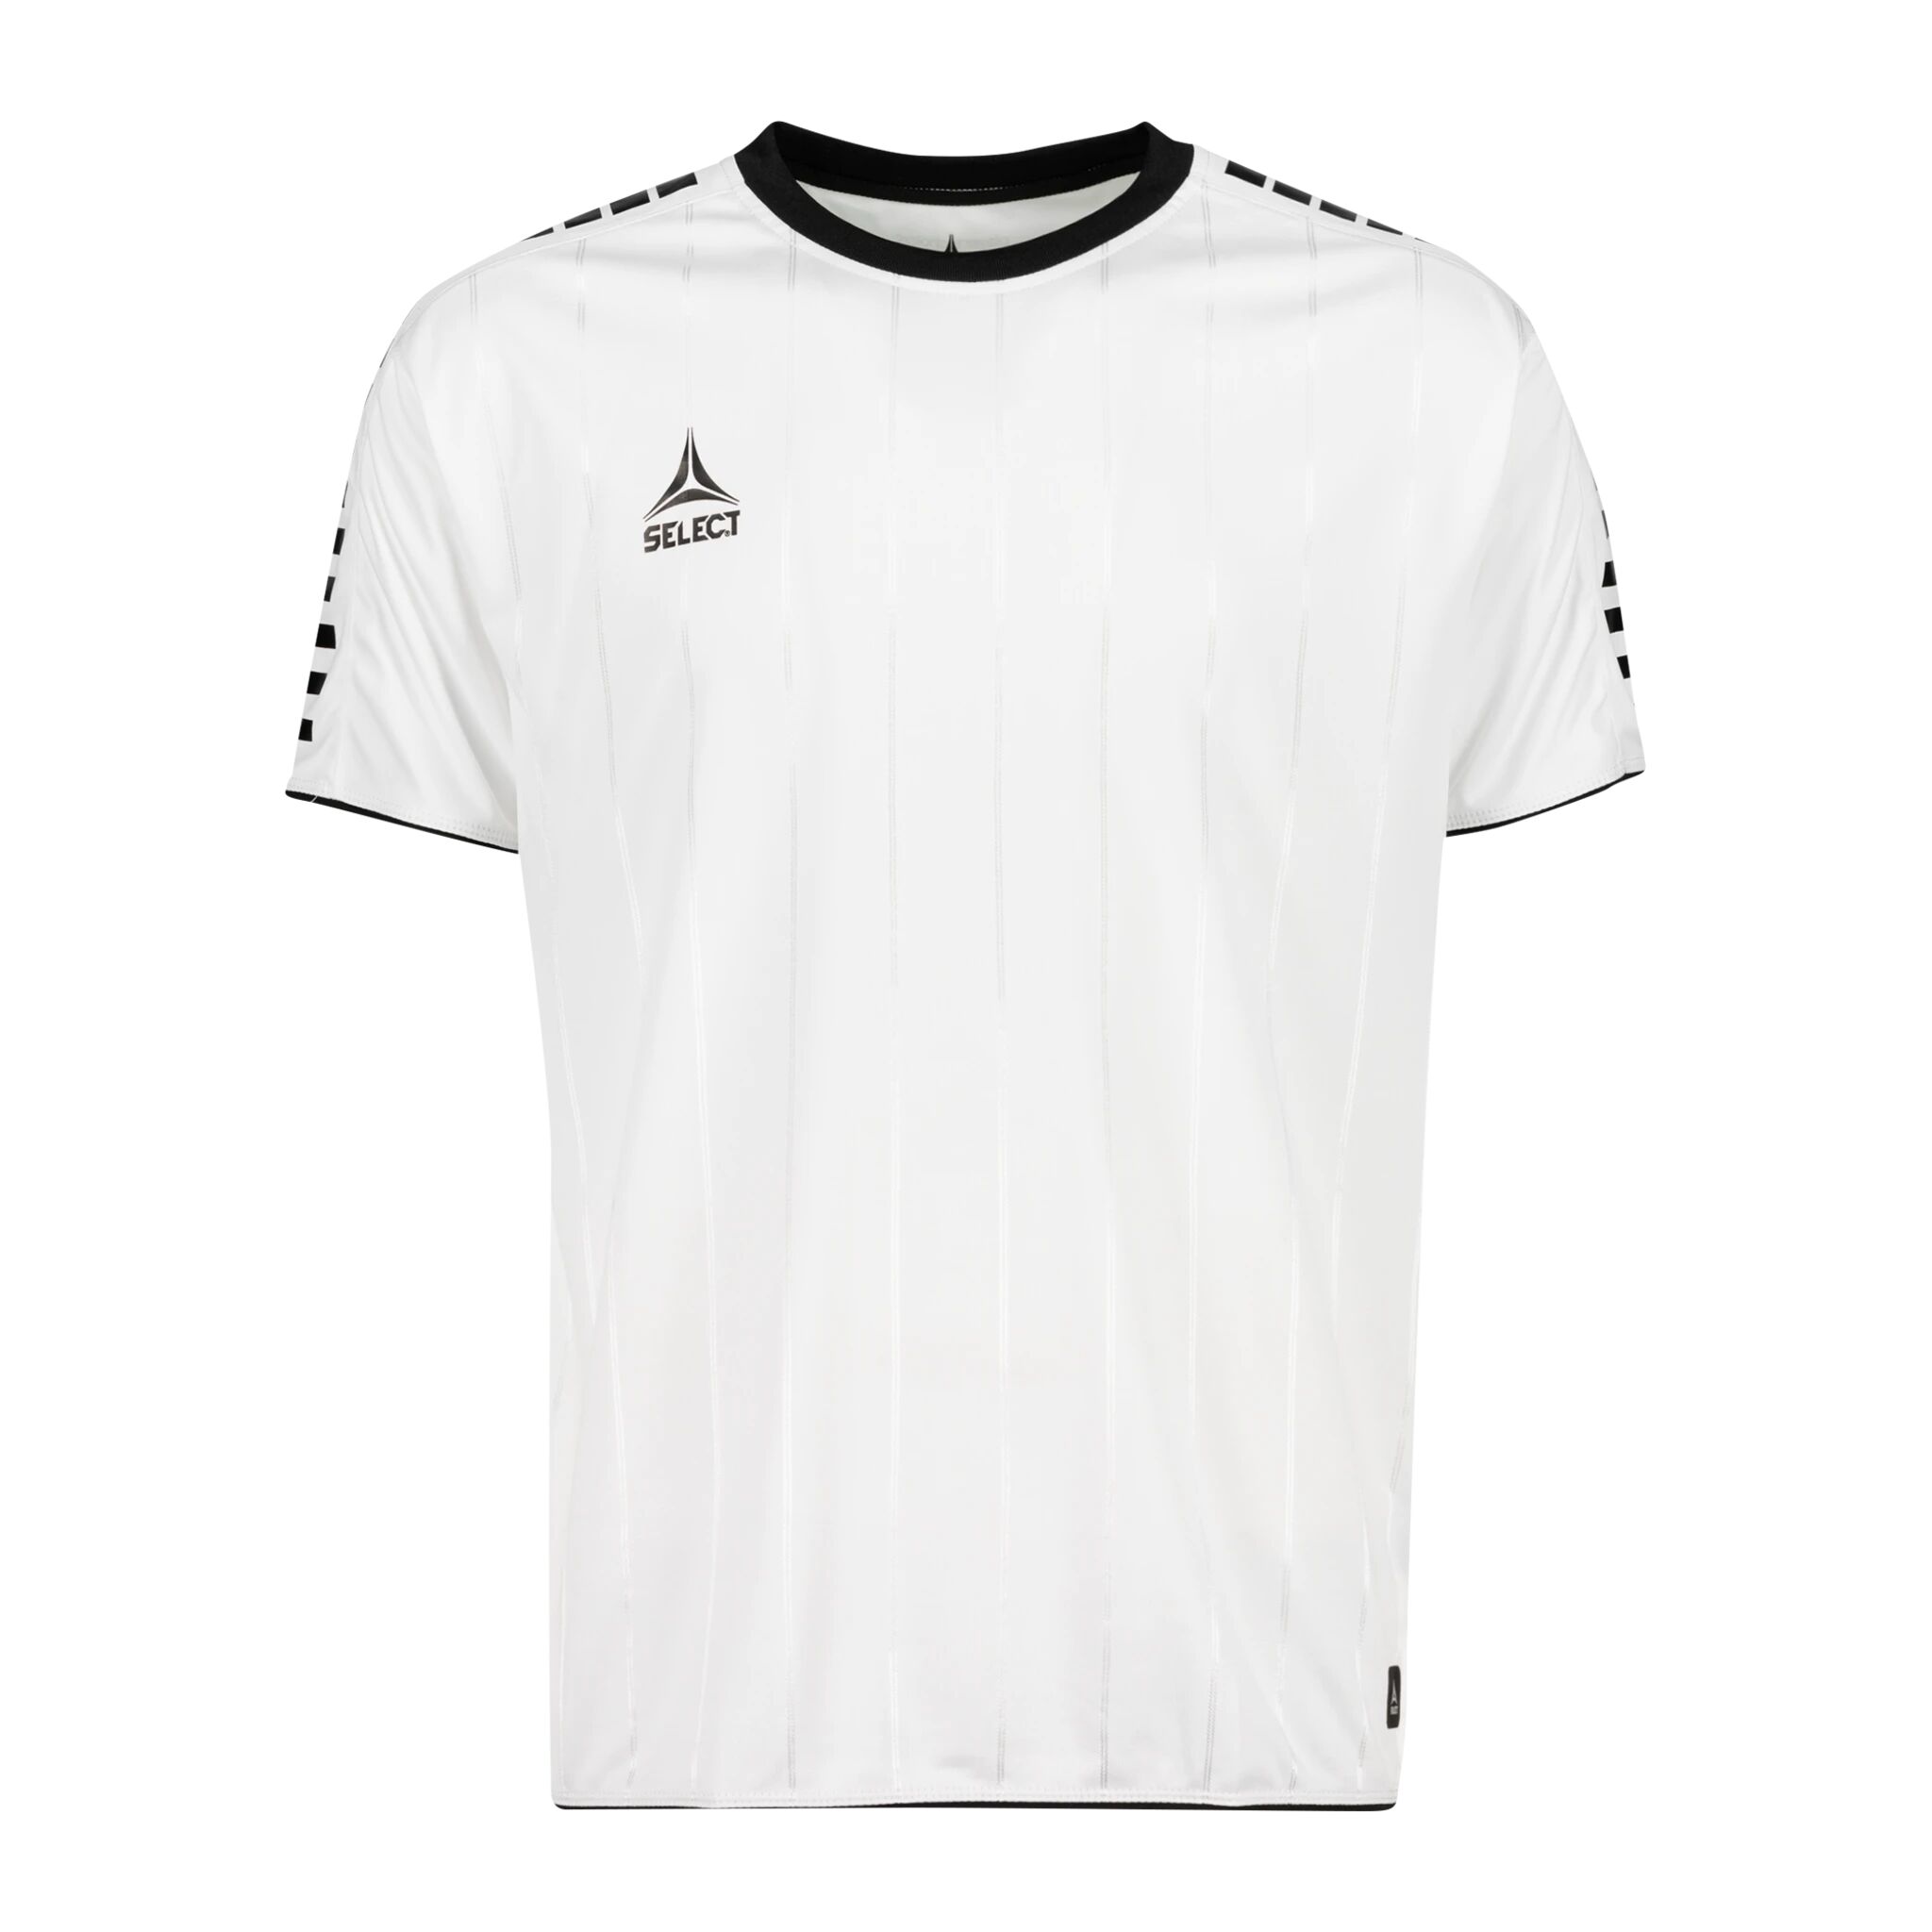 Select Player shirt S/S Argentina, fotballtrøye senior XL White